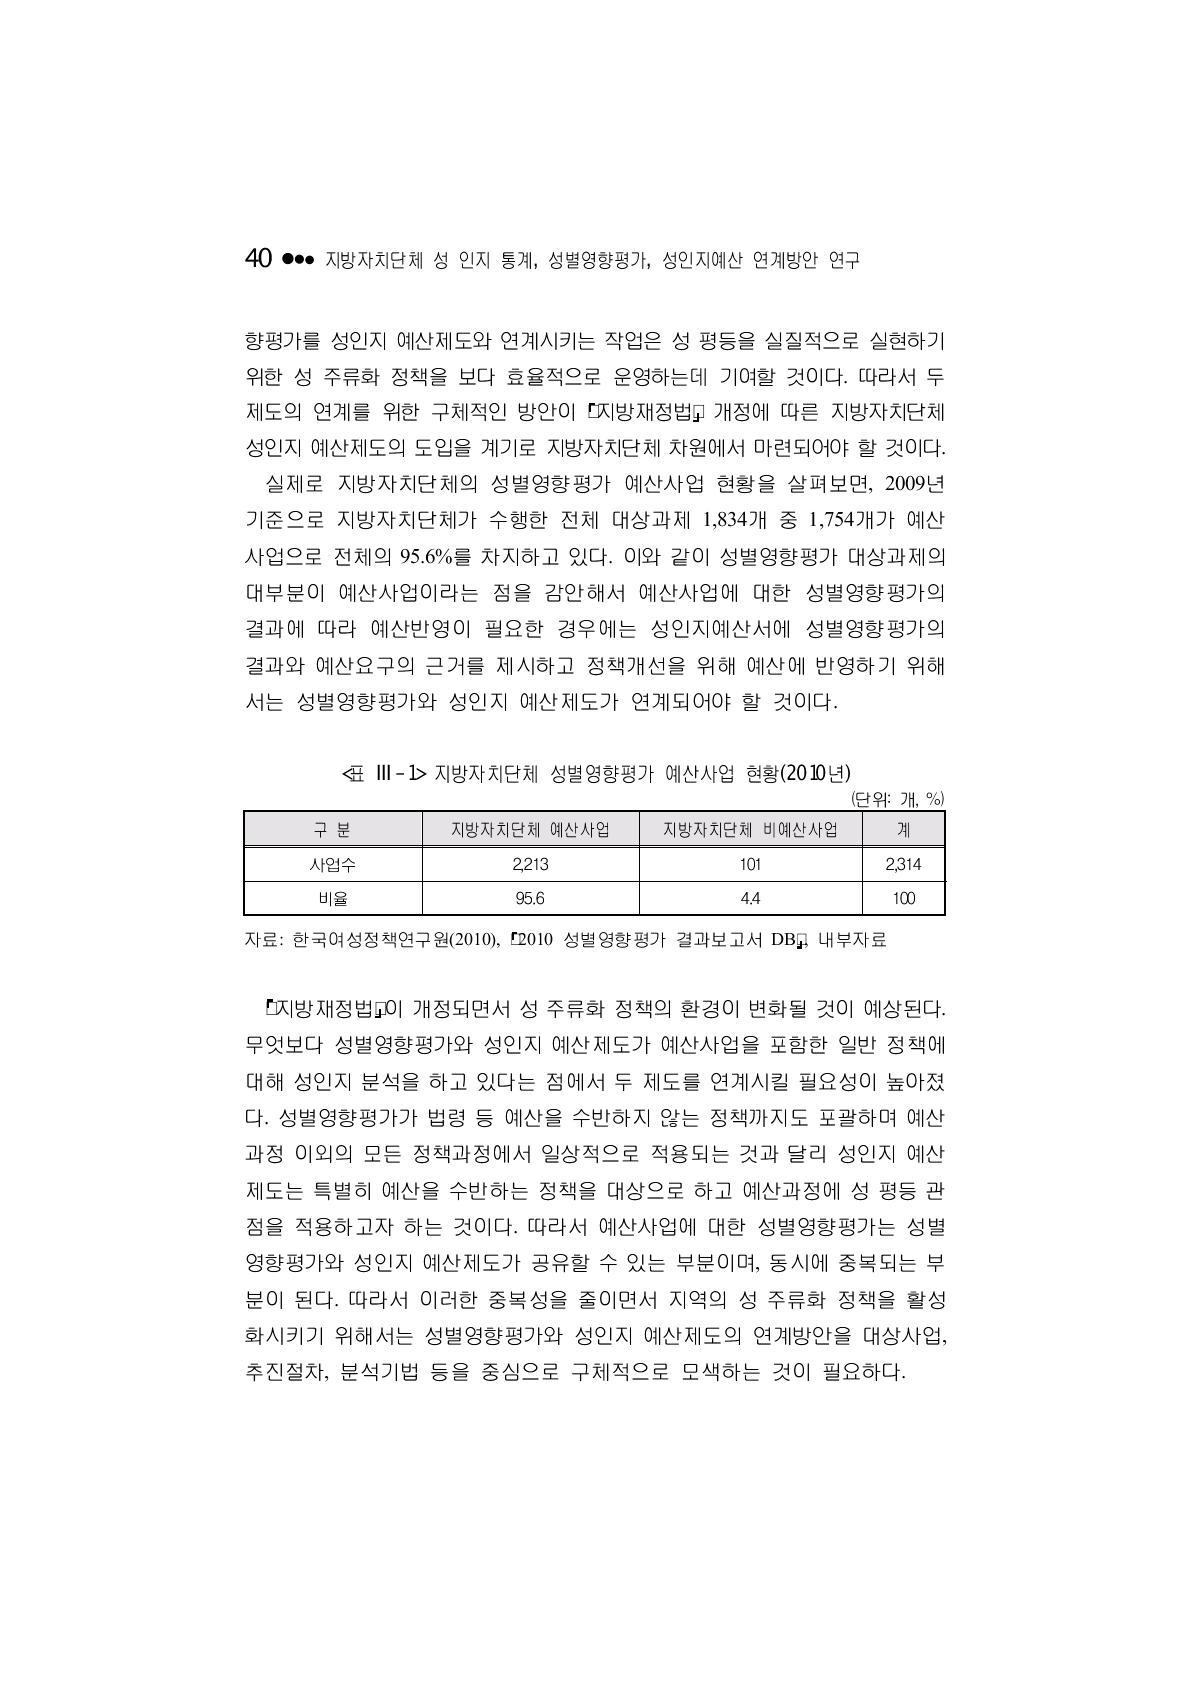 지방자치단체 성별영향평가 예산사업 현황(2010년)